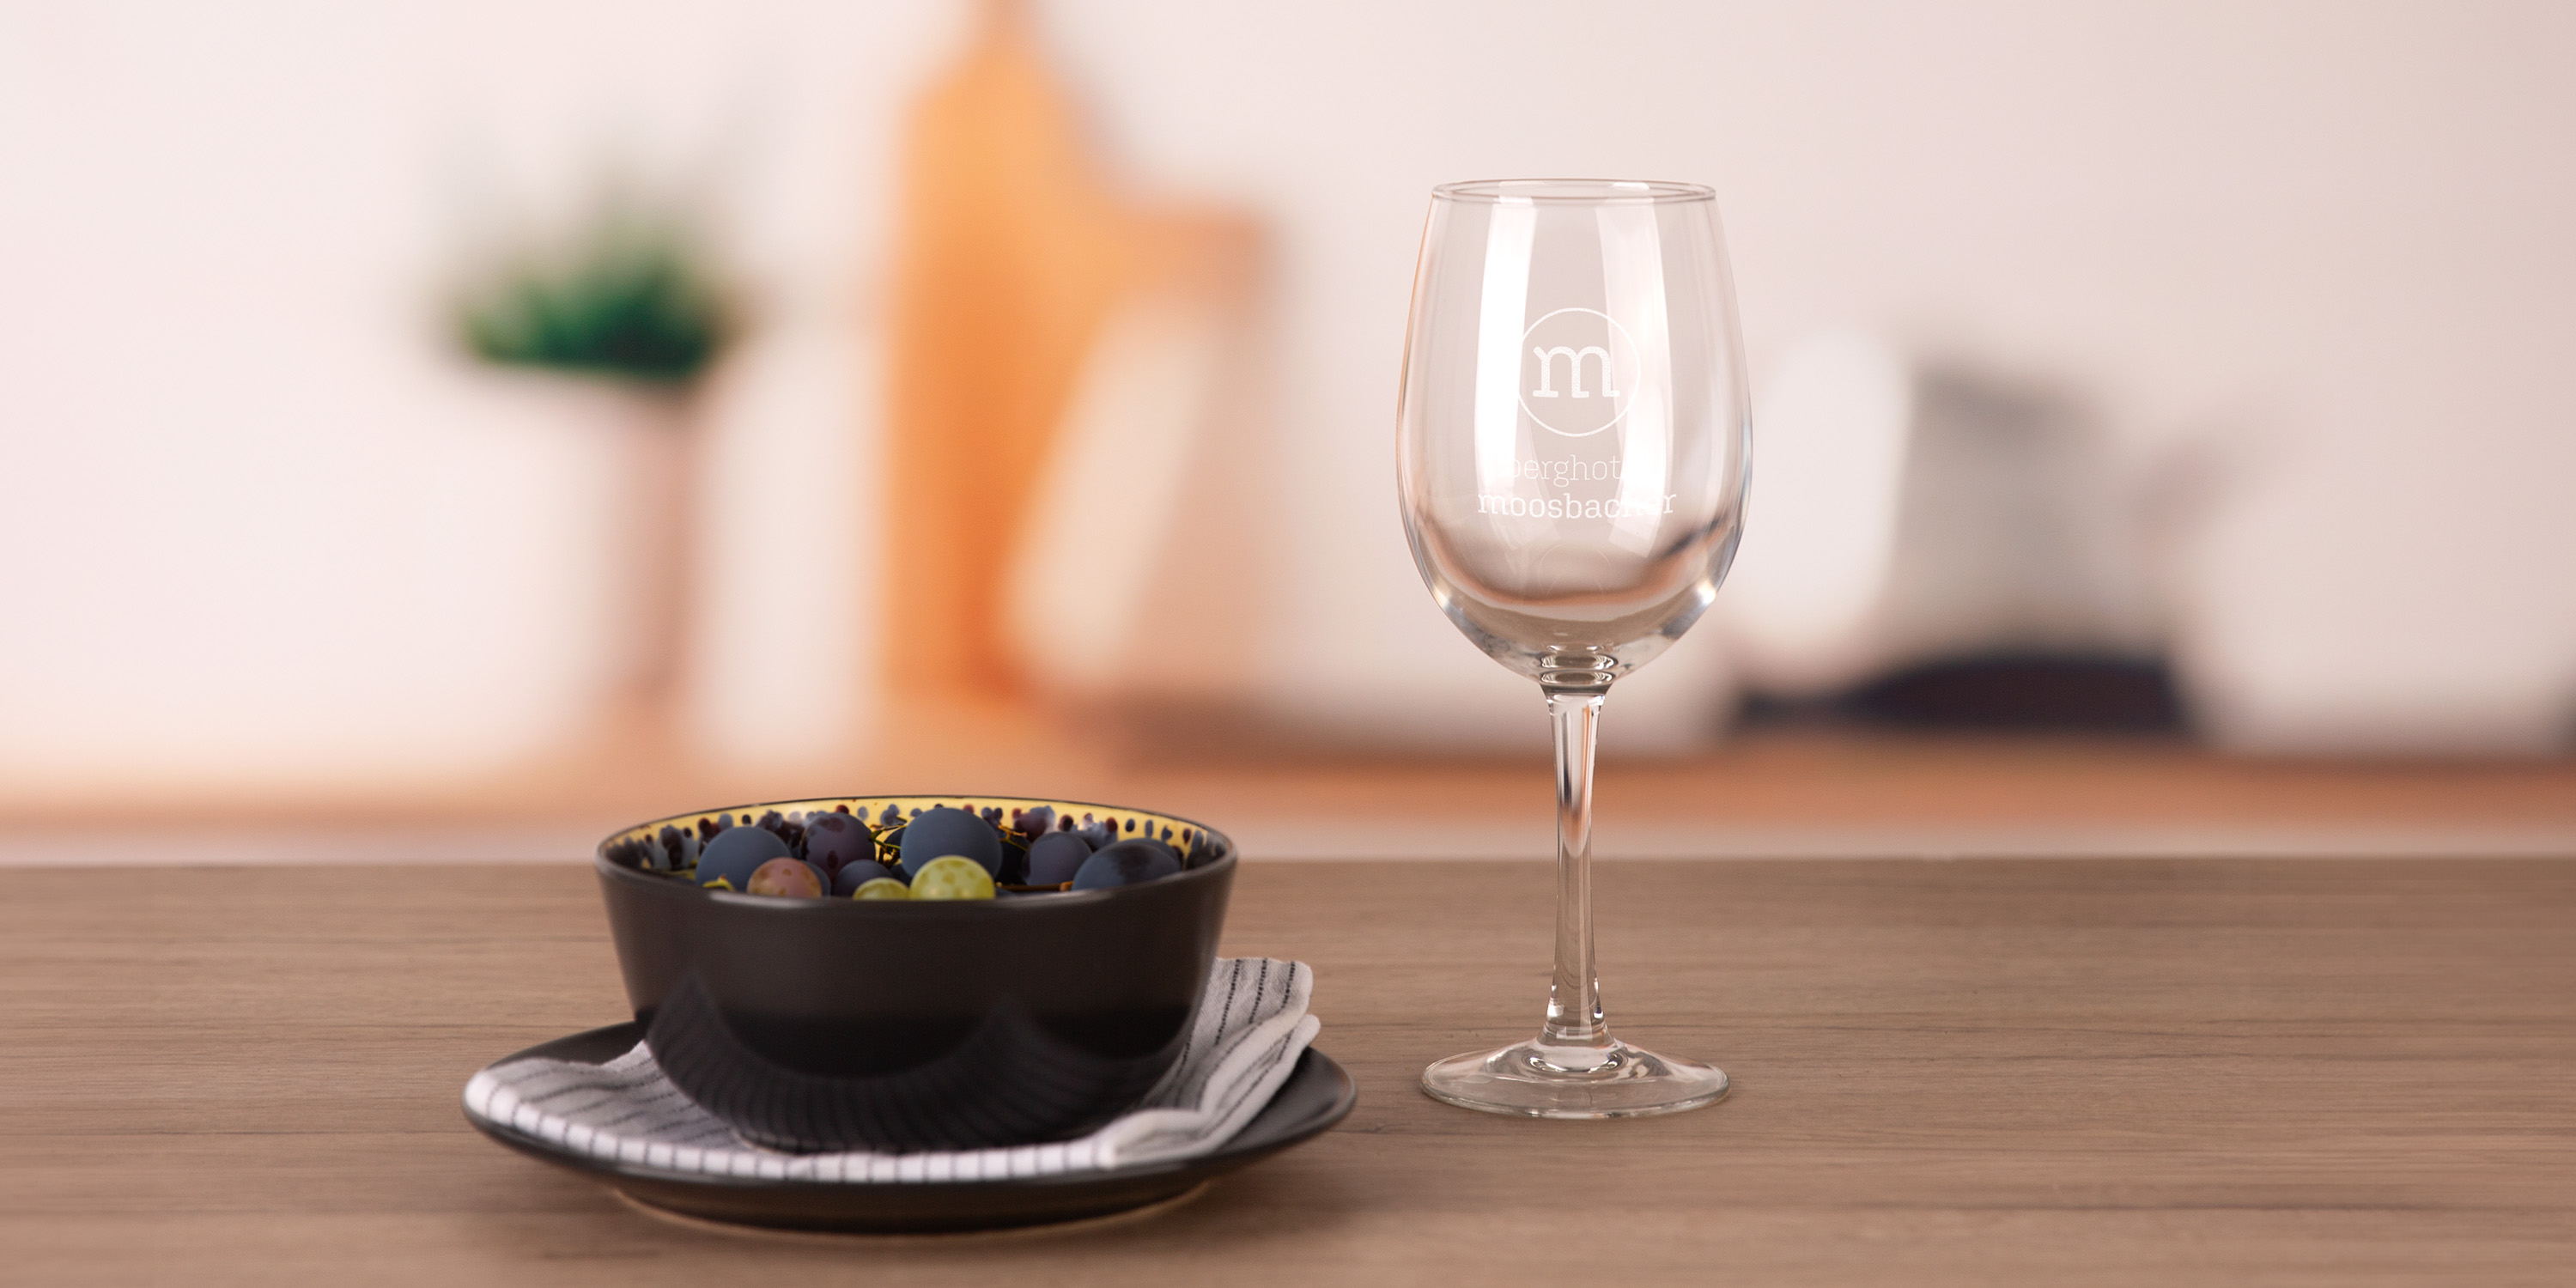 Ein Weinglas auf einem Tisch neben einer Schüssel